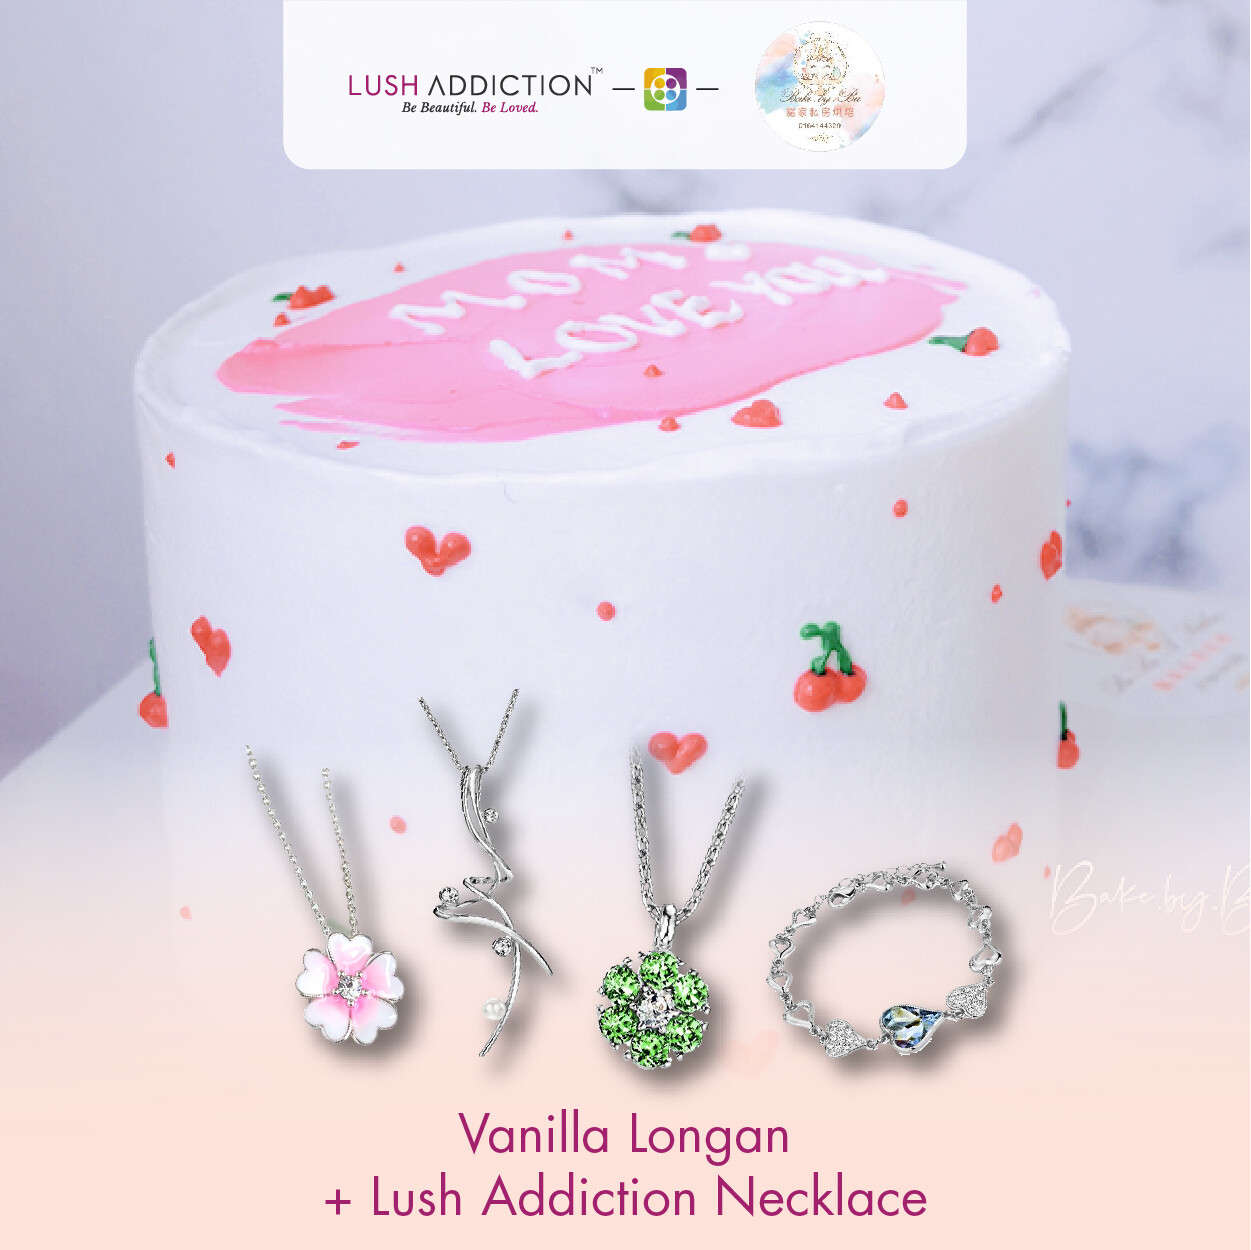 Vanilla longan + Lush Addiction Necklace (By: Bake By Bu from Penang)